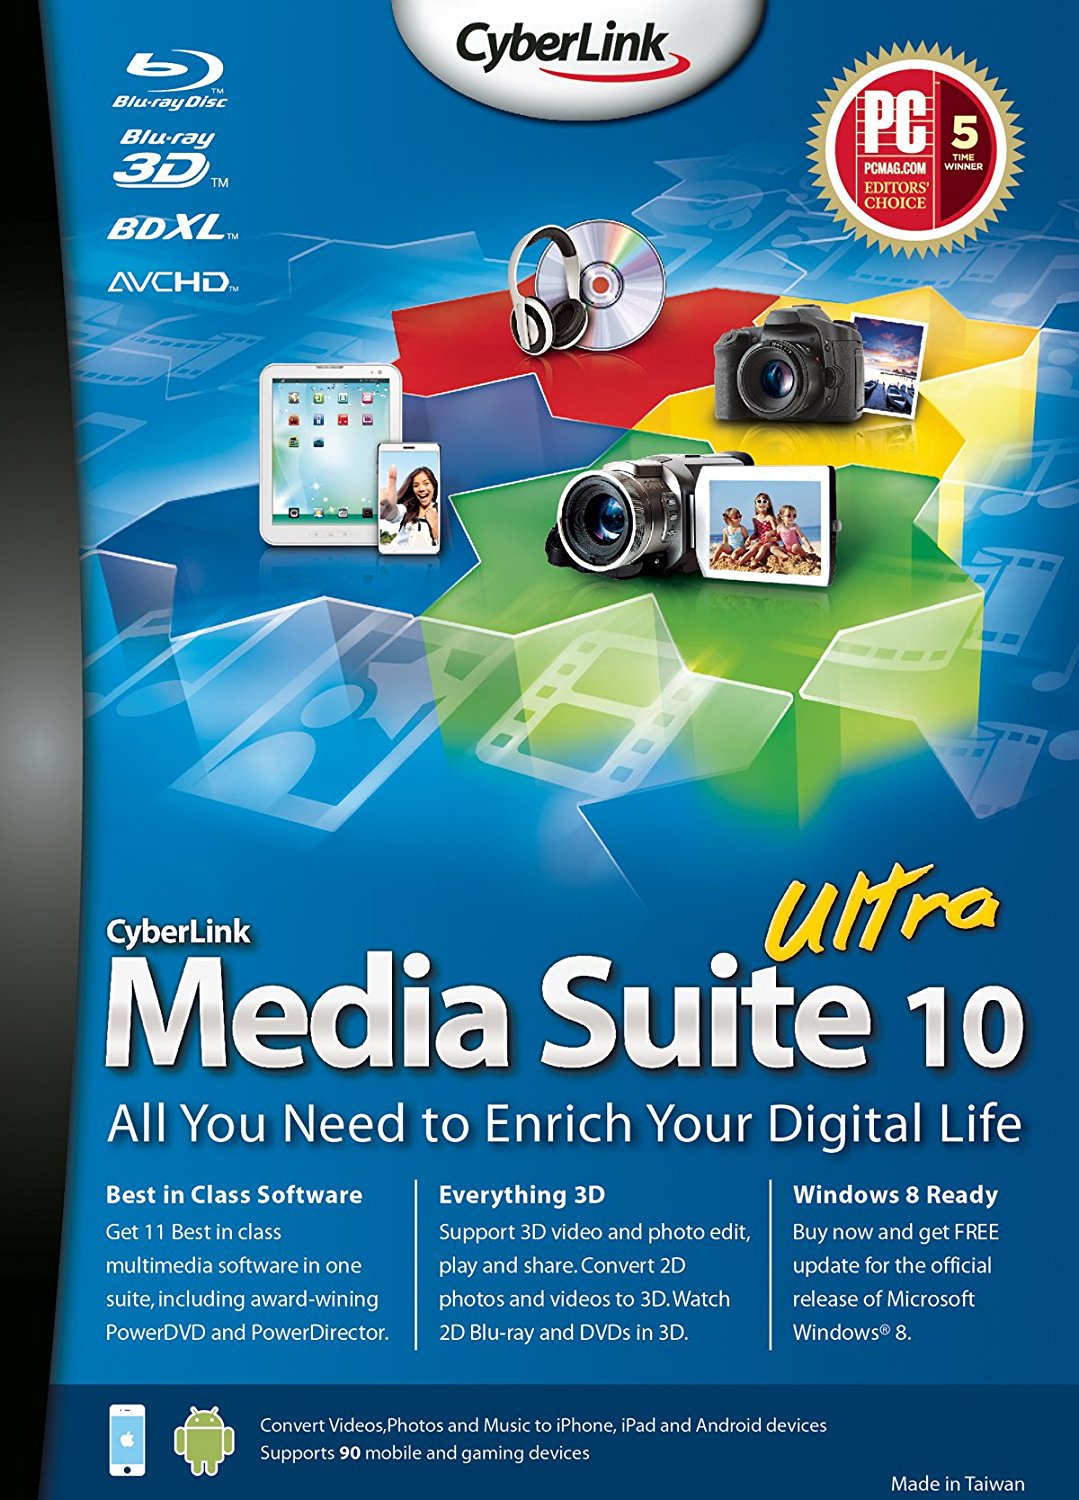 Cyberlink Media Suite 10 Users Manual